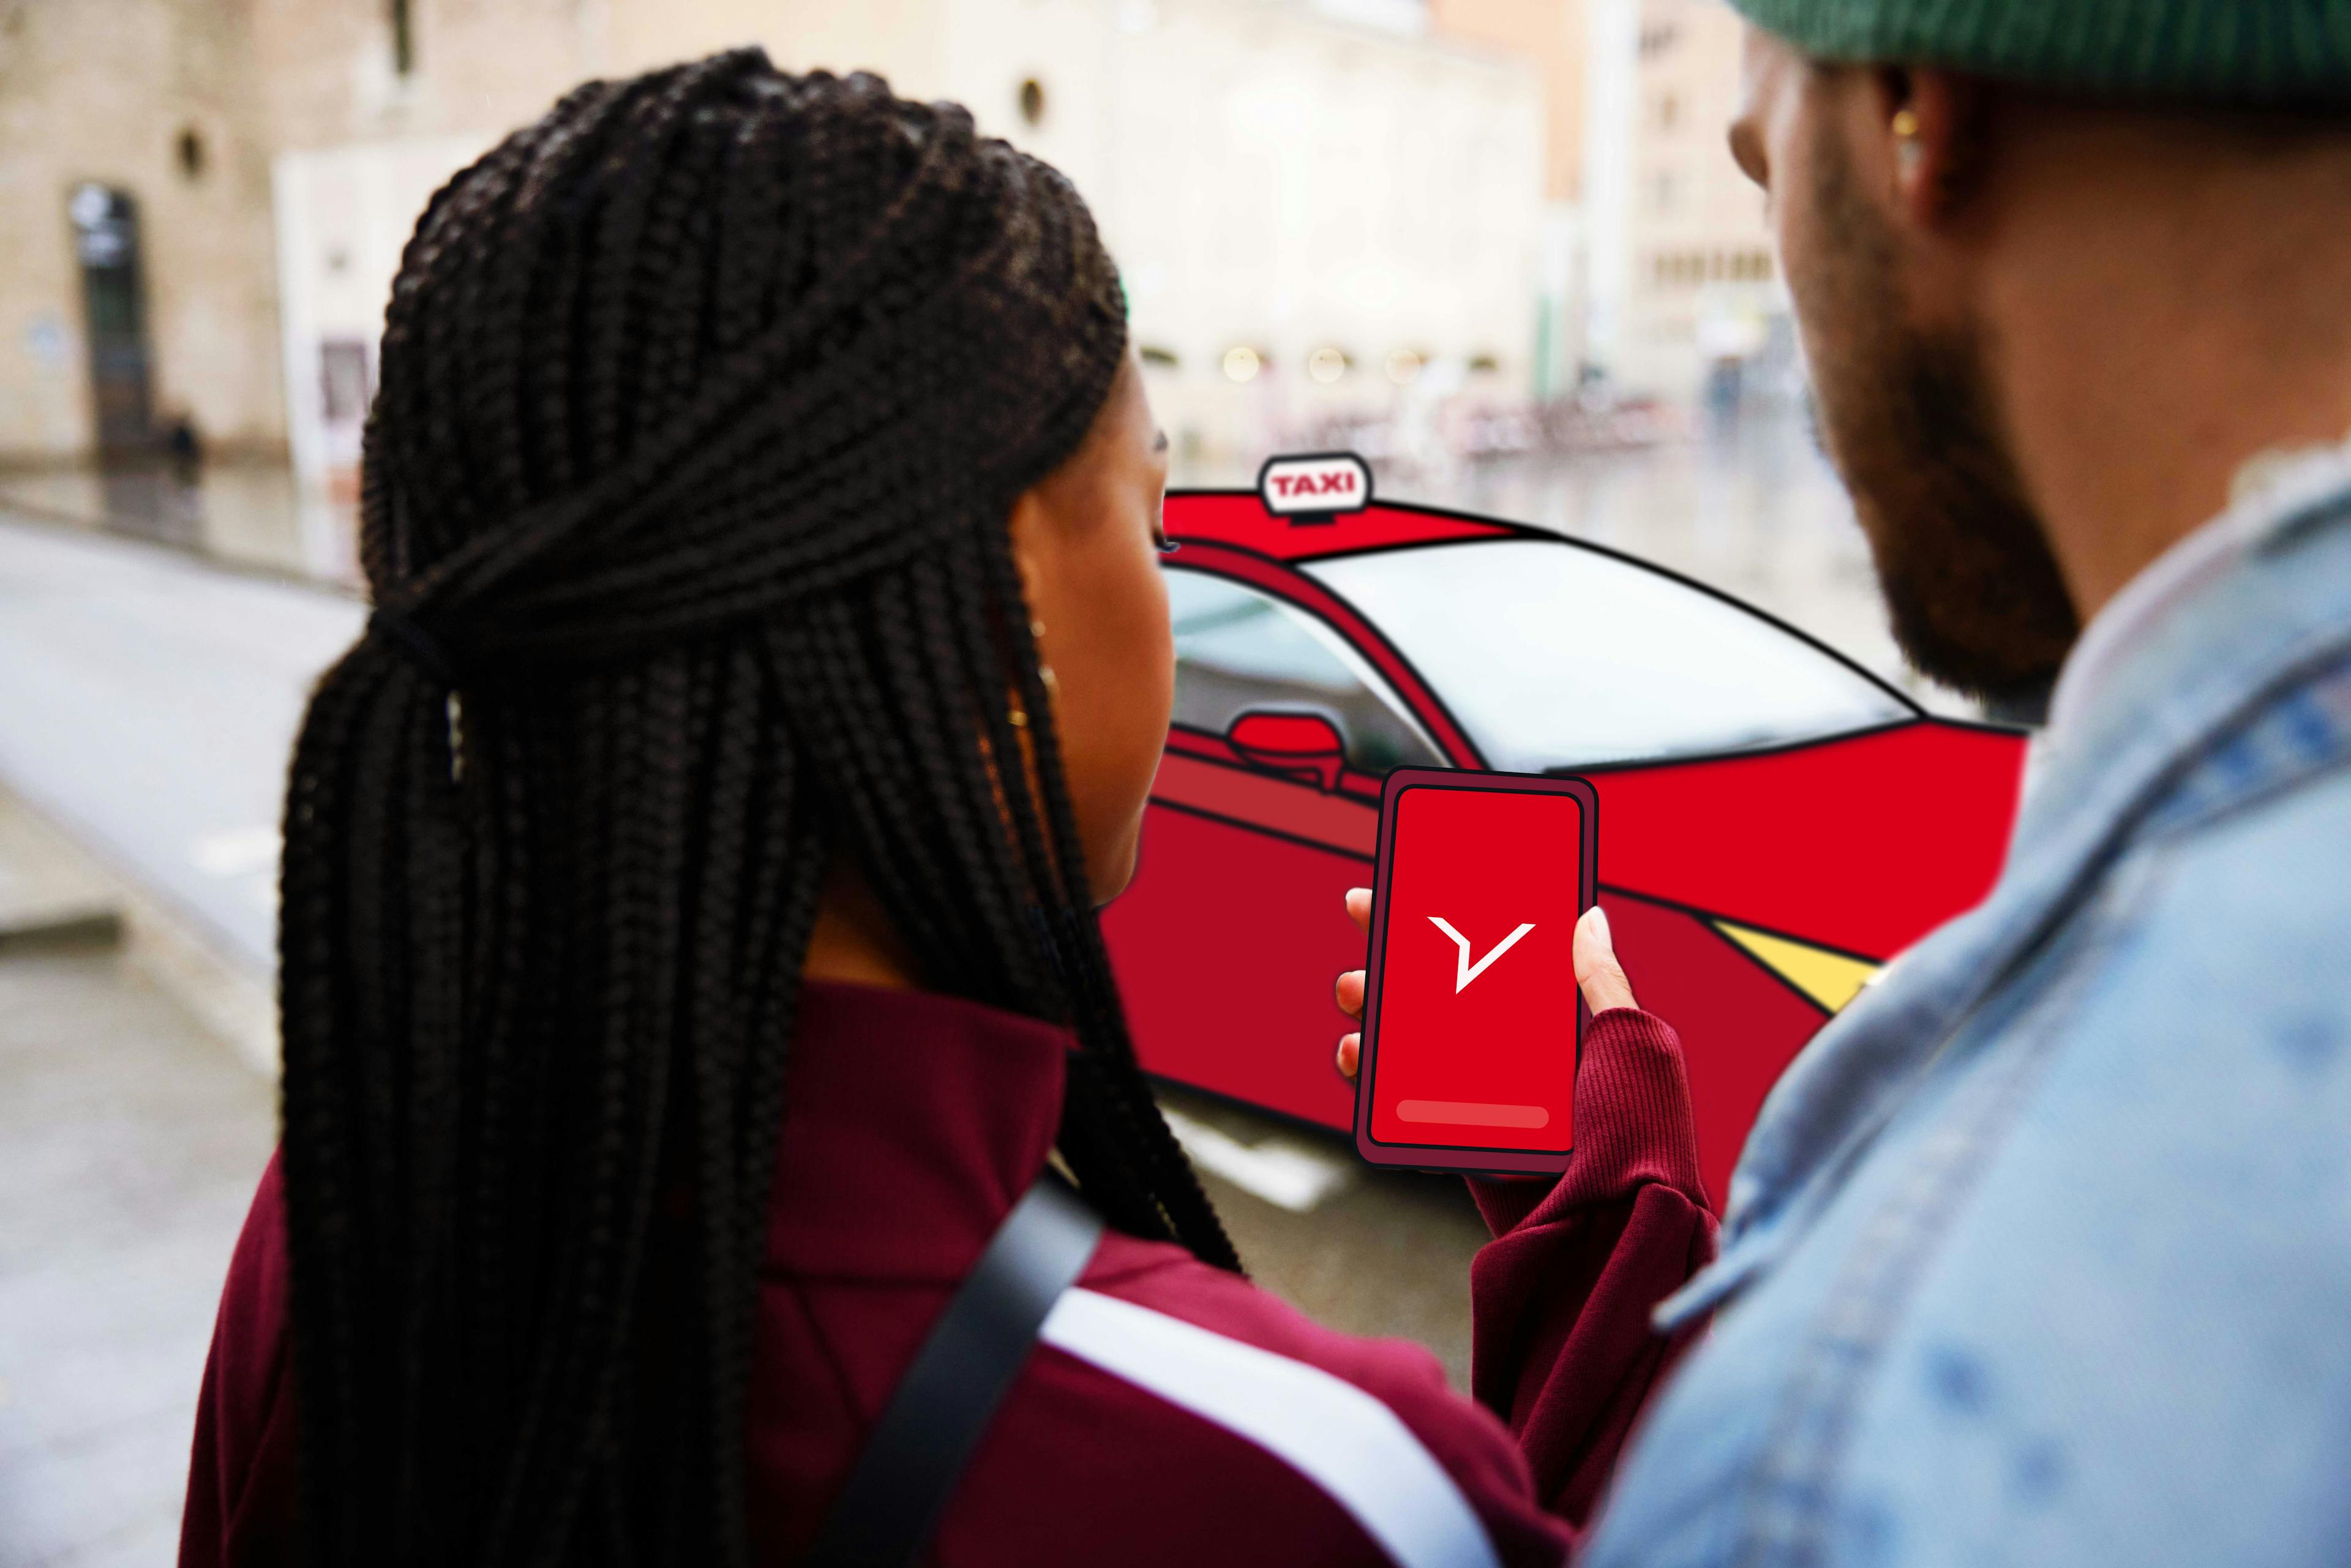 Dwóch podróżujących w interesach patrzy na telefon z logo FREENOW na ekranie i czerwoną taksówką w tle